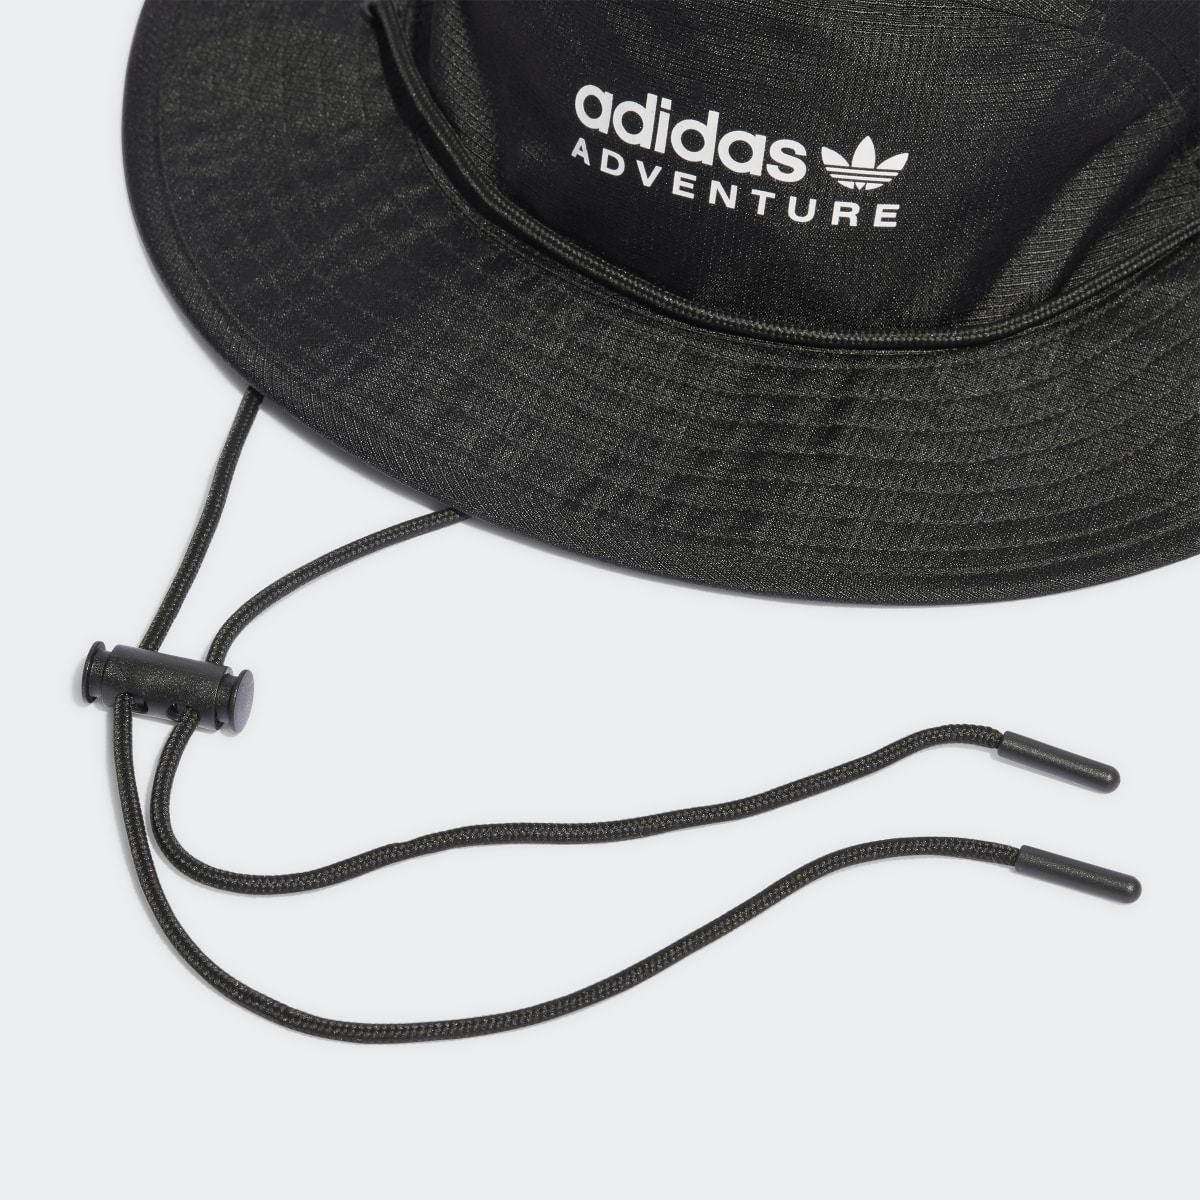 Adidas Adventure Exclusive Cap. 5